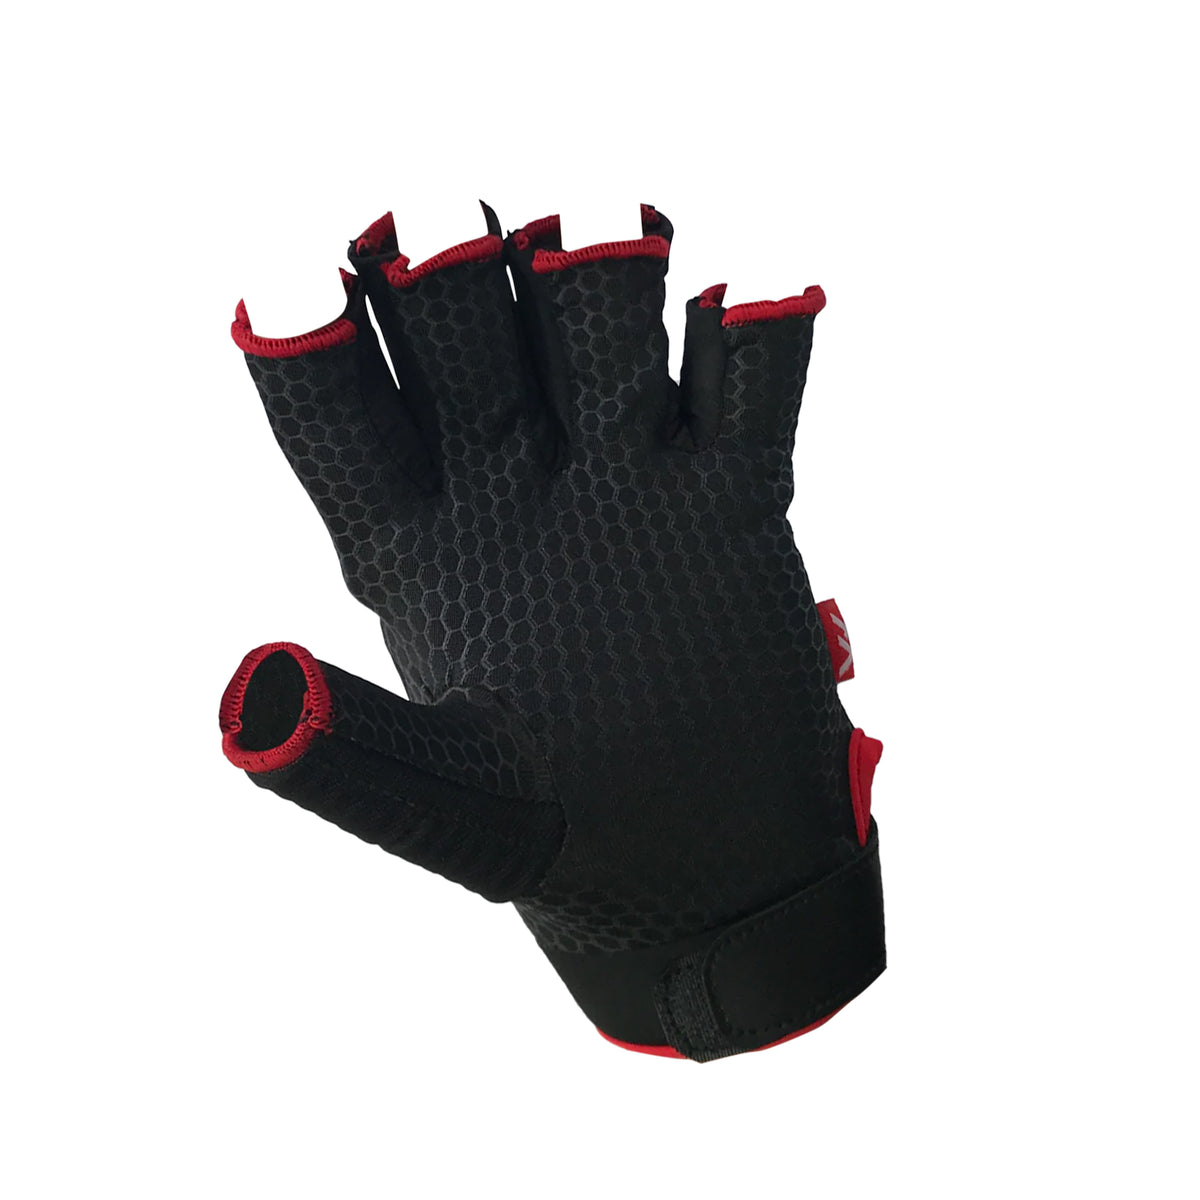 Mercian Evo 0.1 Hockey Glove: Black